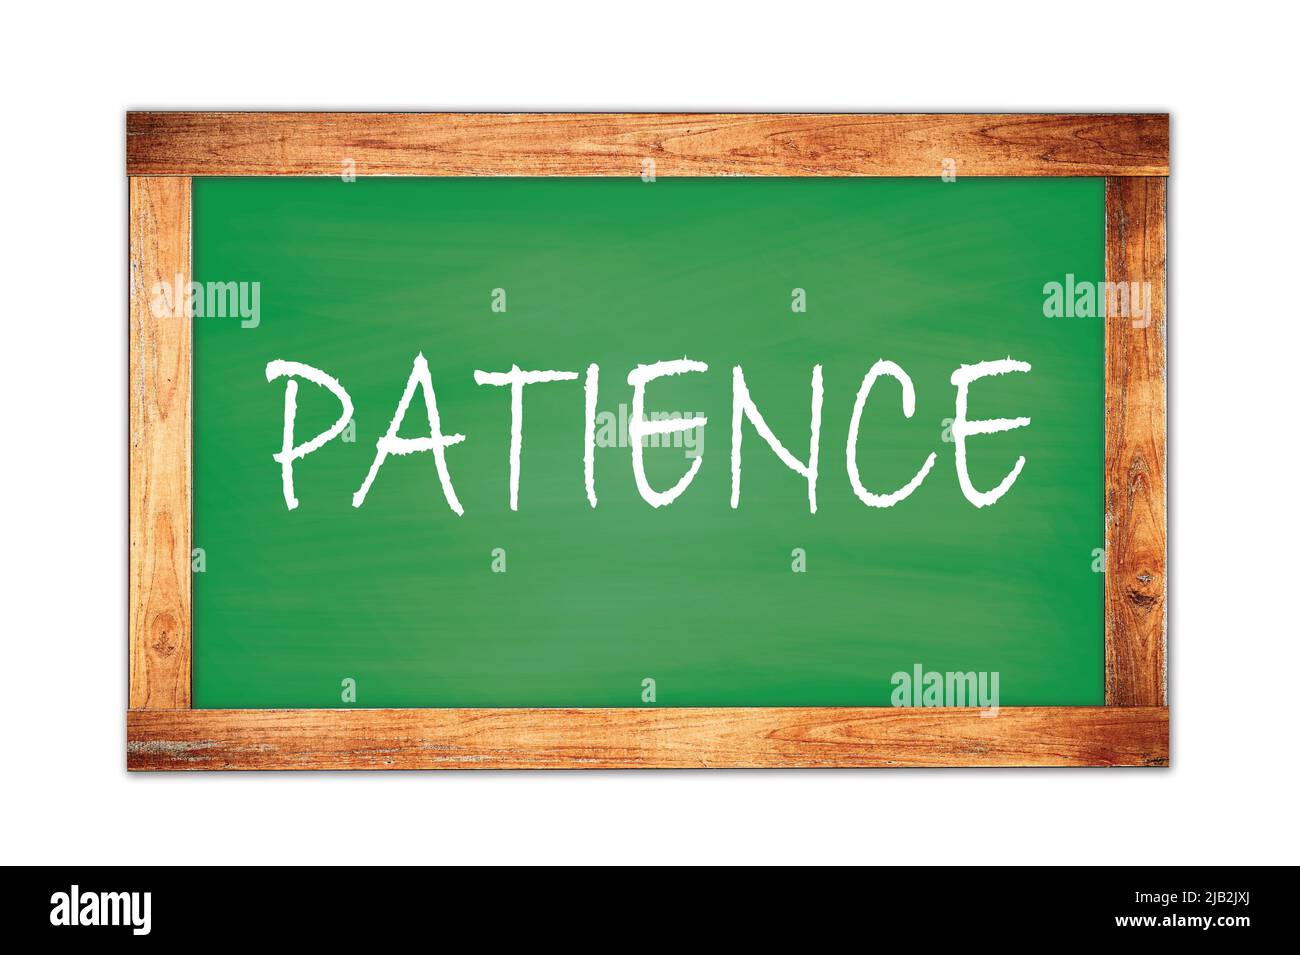 PATIENCE text written on green wooden frame school blackboard. Stock Photo